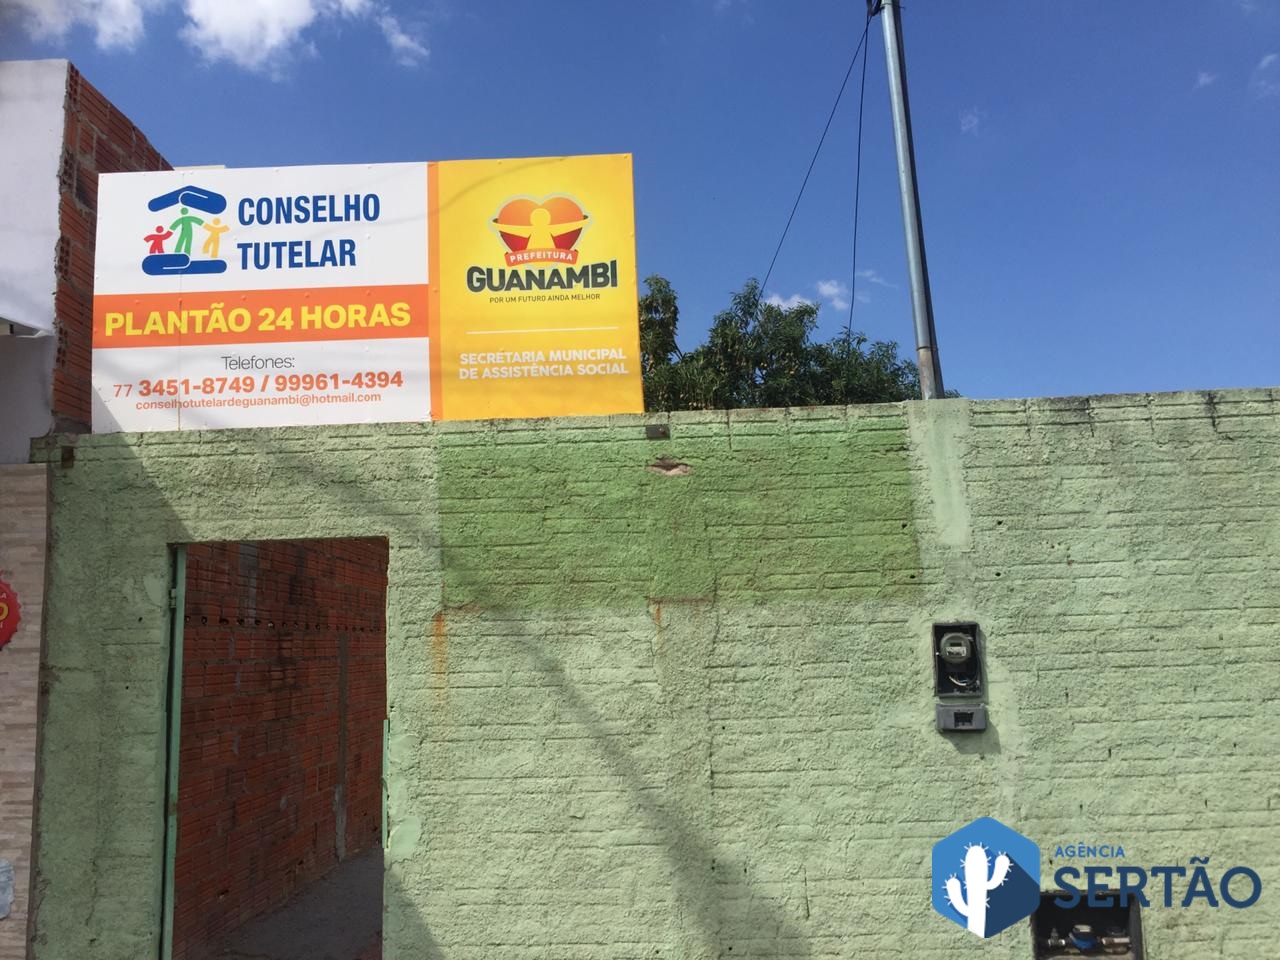 Conselho Tutelar de Guanambi: nos distritos também haverá local de votação neste domingo